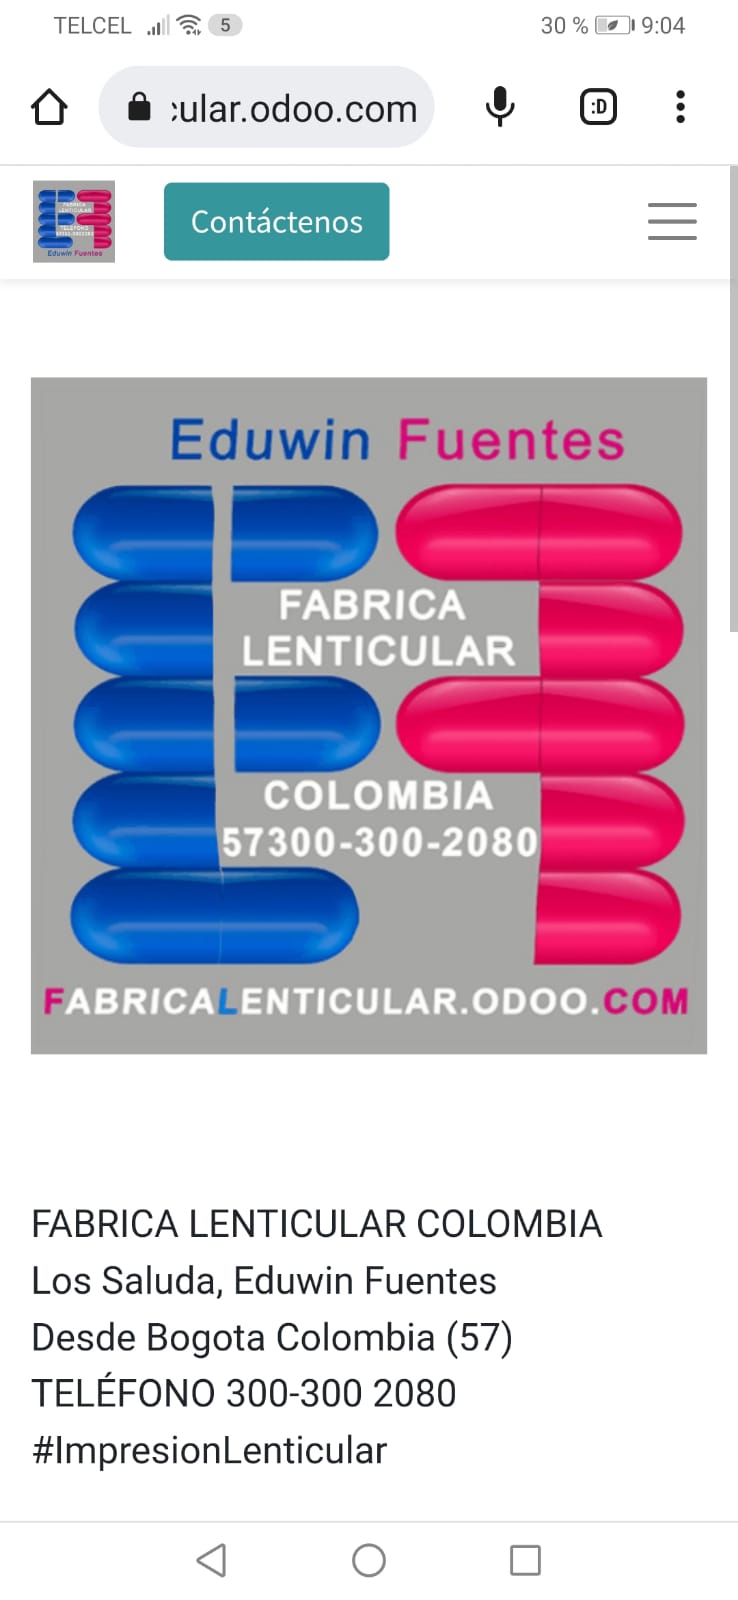 TELCEL wl= 8 30% Fe 19.04

( @ wularodoo.com & :

BH EX =

FABRICA
LENTICULAR

COLOMBIA
57300-300-2080

ABRICA ENTICULAR.ODOO.

 

FABRICA LENTICULAR COLOMBIA
Los Saluda, Eduwin Fuentes
Desde Bogota Colombia (57)
TELEFONO 300-300 2080
#lmpresionLenticular

d Oo O